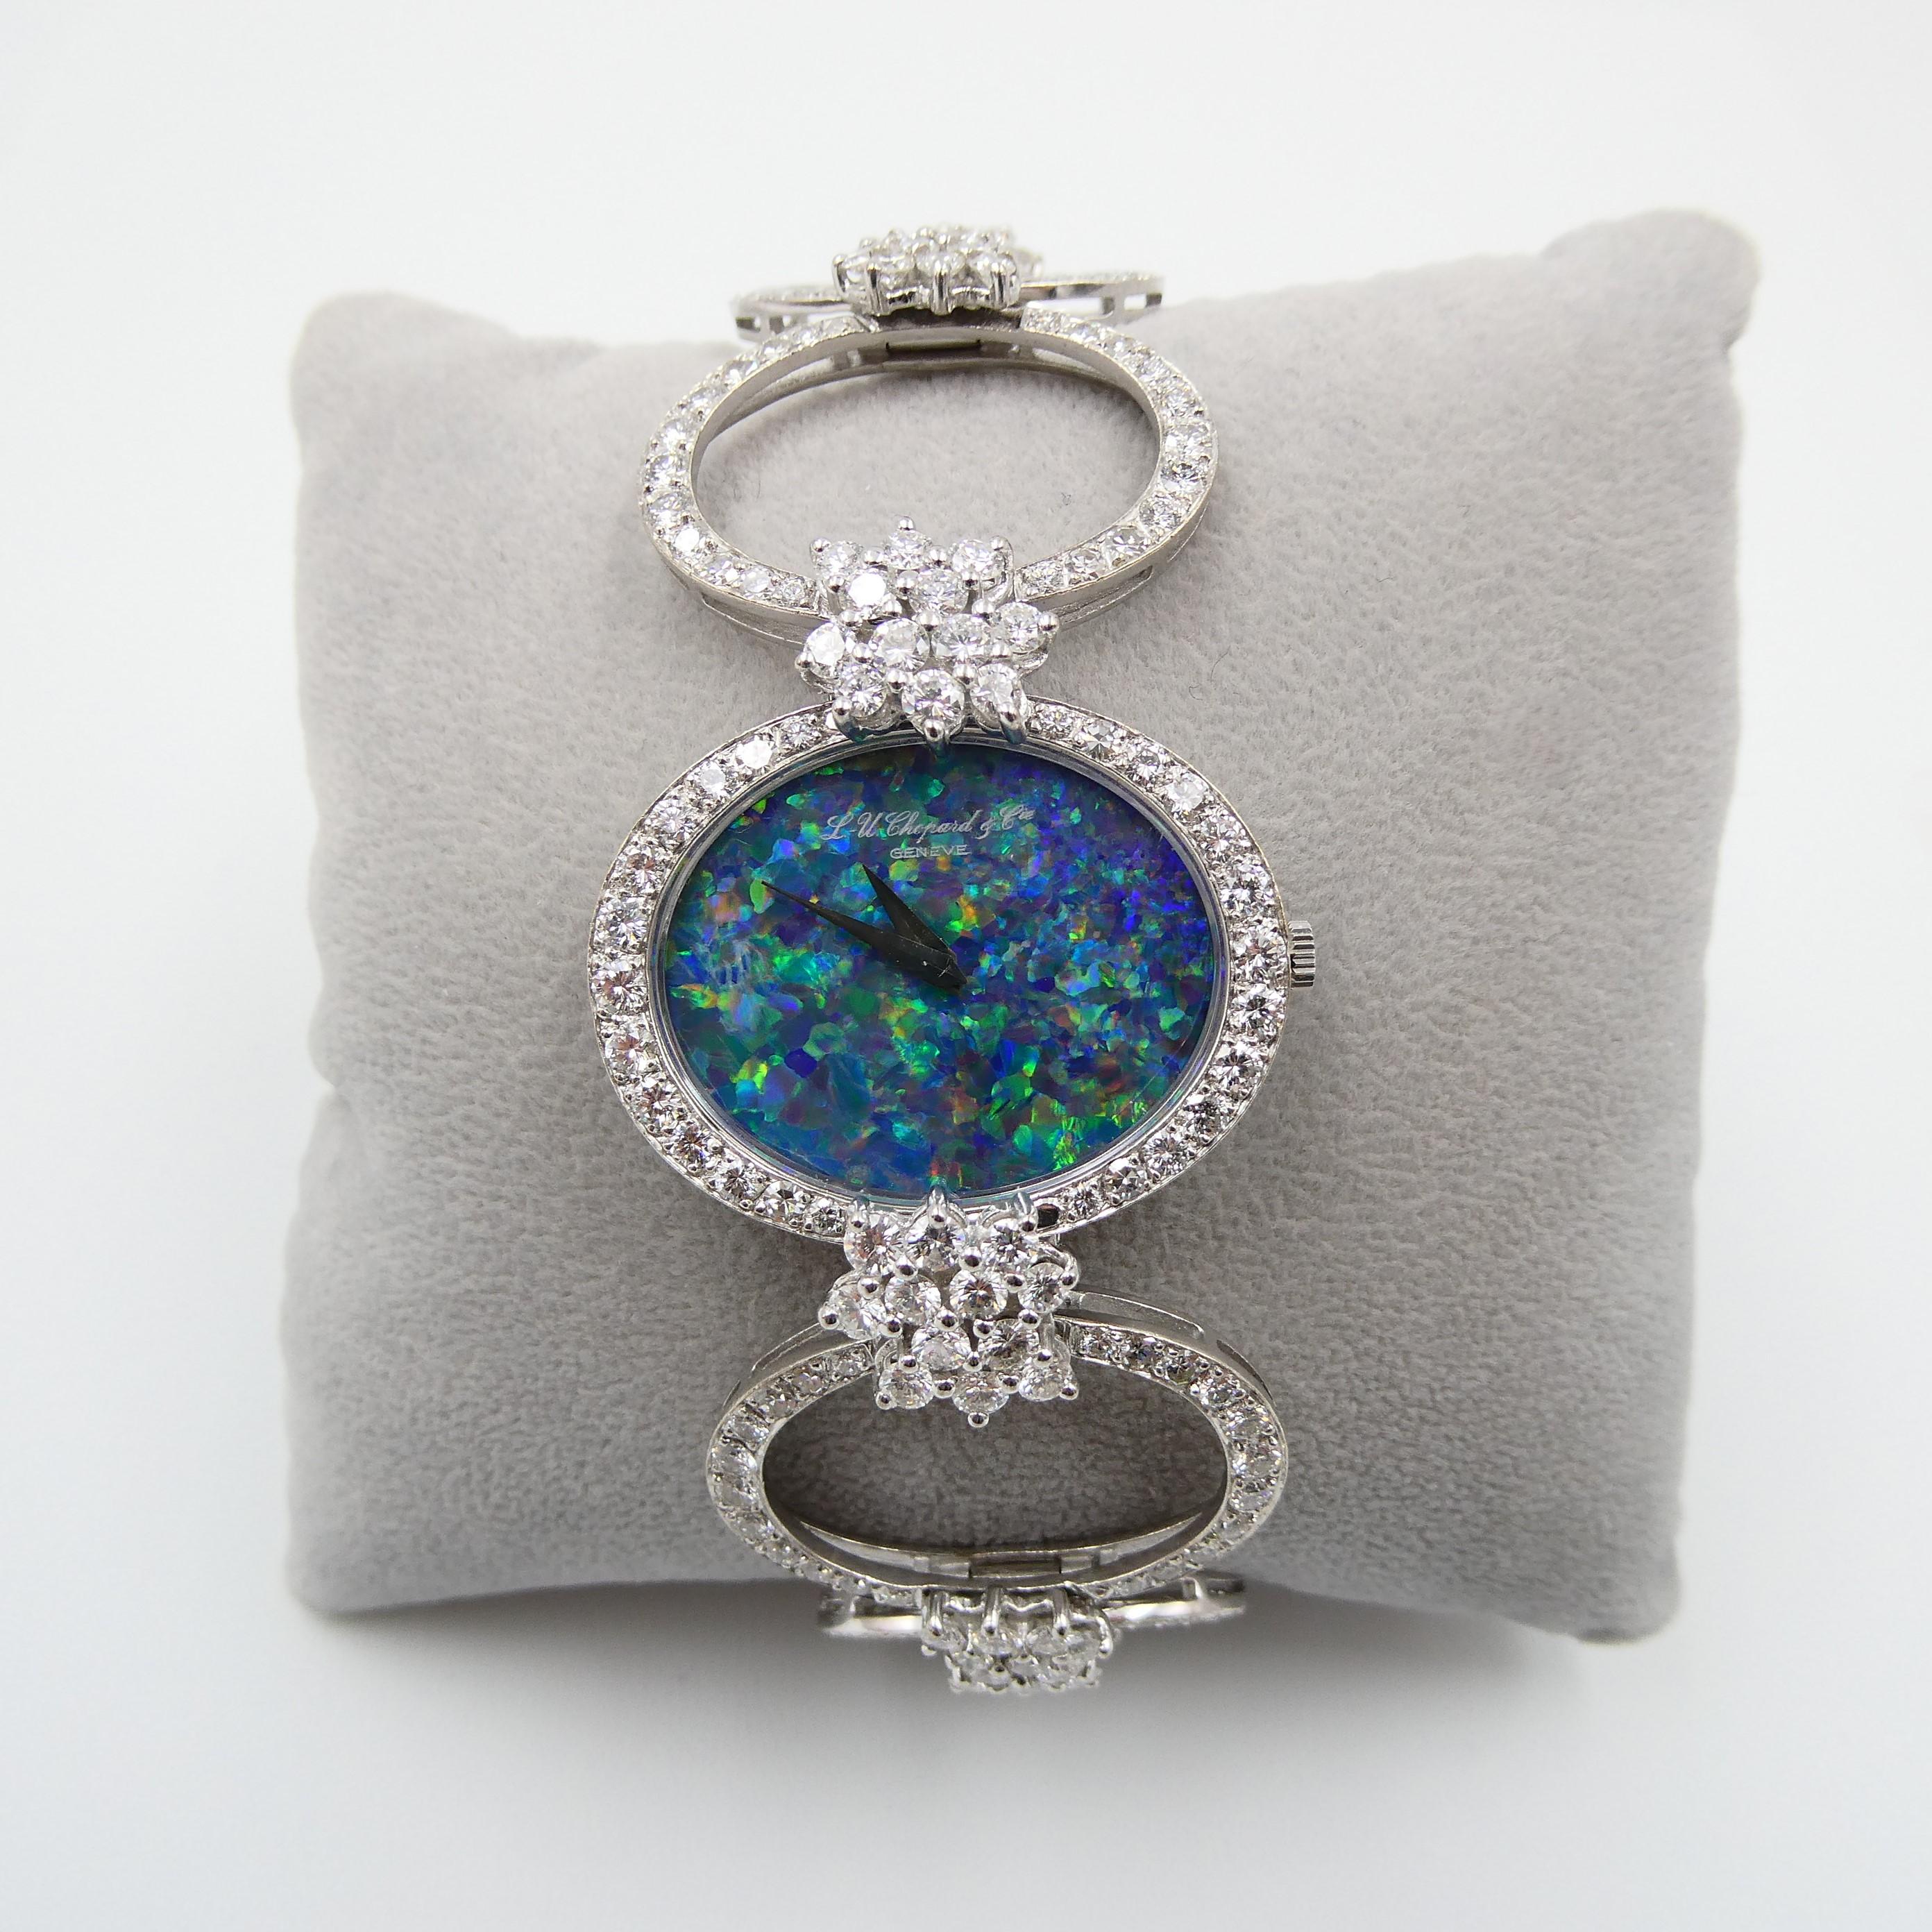 Découvrez l'attrait durable de la montre Chopard en opale noire et diamants, un véritable chef-d'œuvre datant des années 1970. Méticuleusement fabriquée avec un souci constant du détail, elle met en valeur un exquis bracelet en or blanc 18 carats